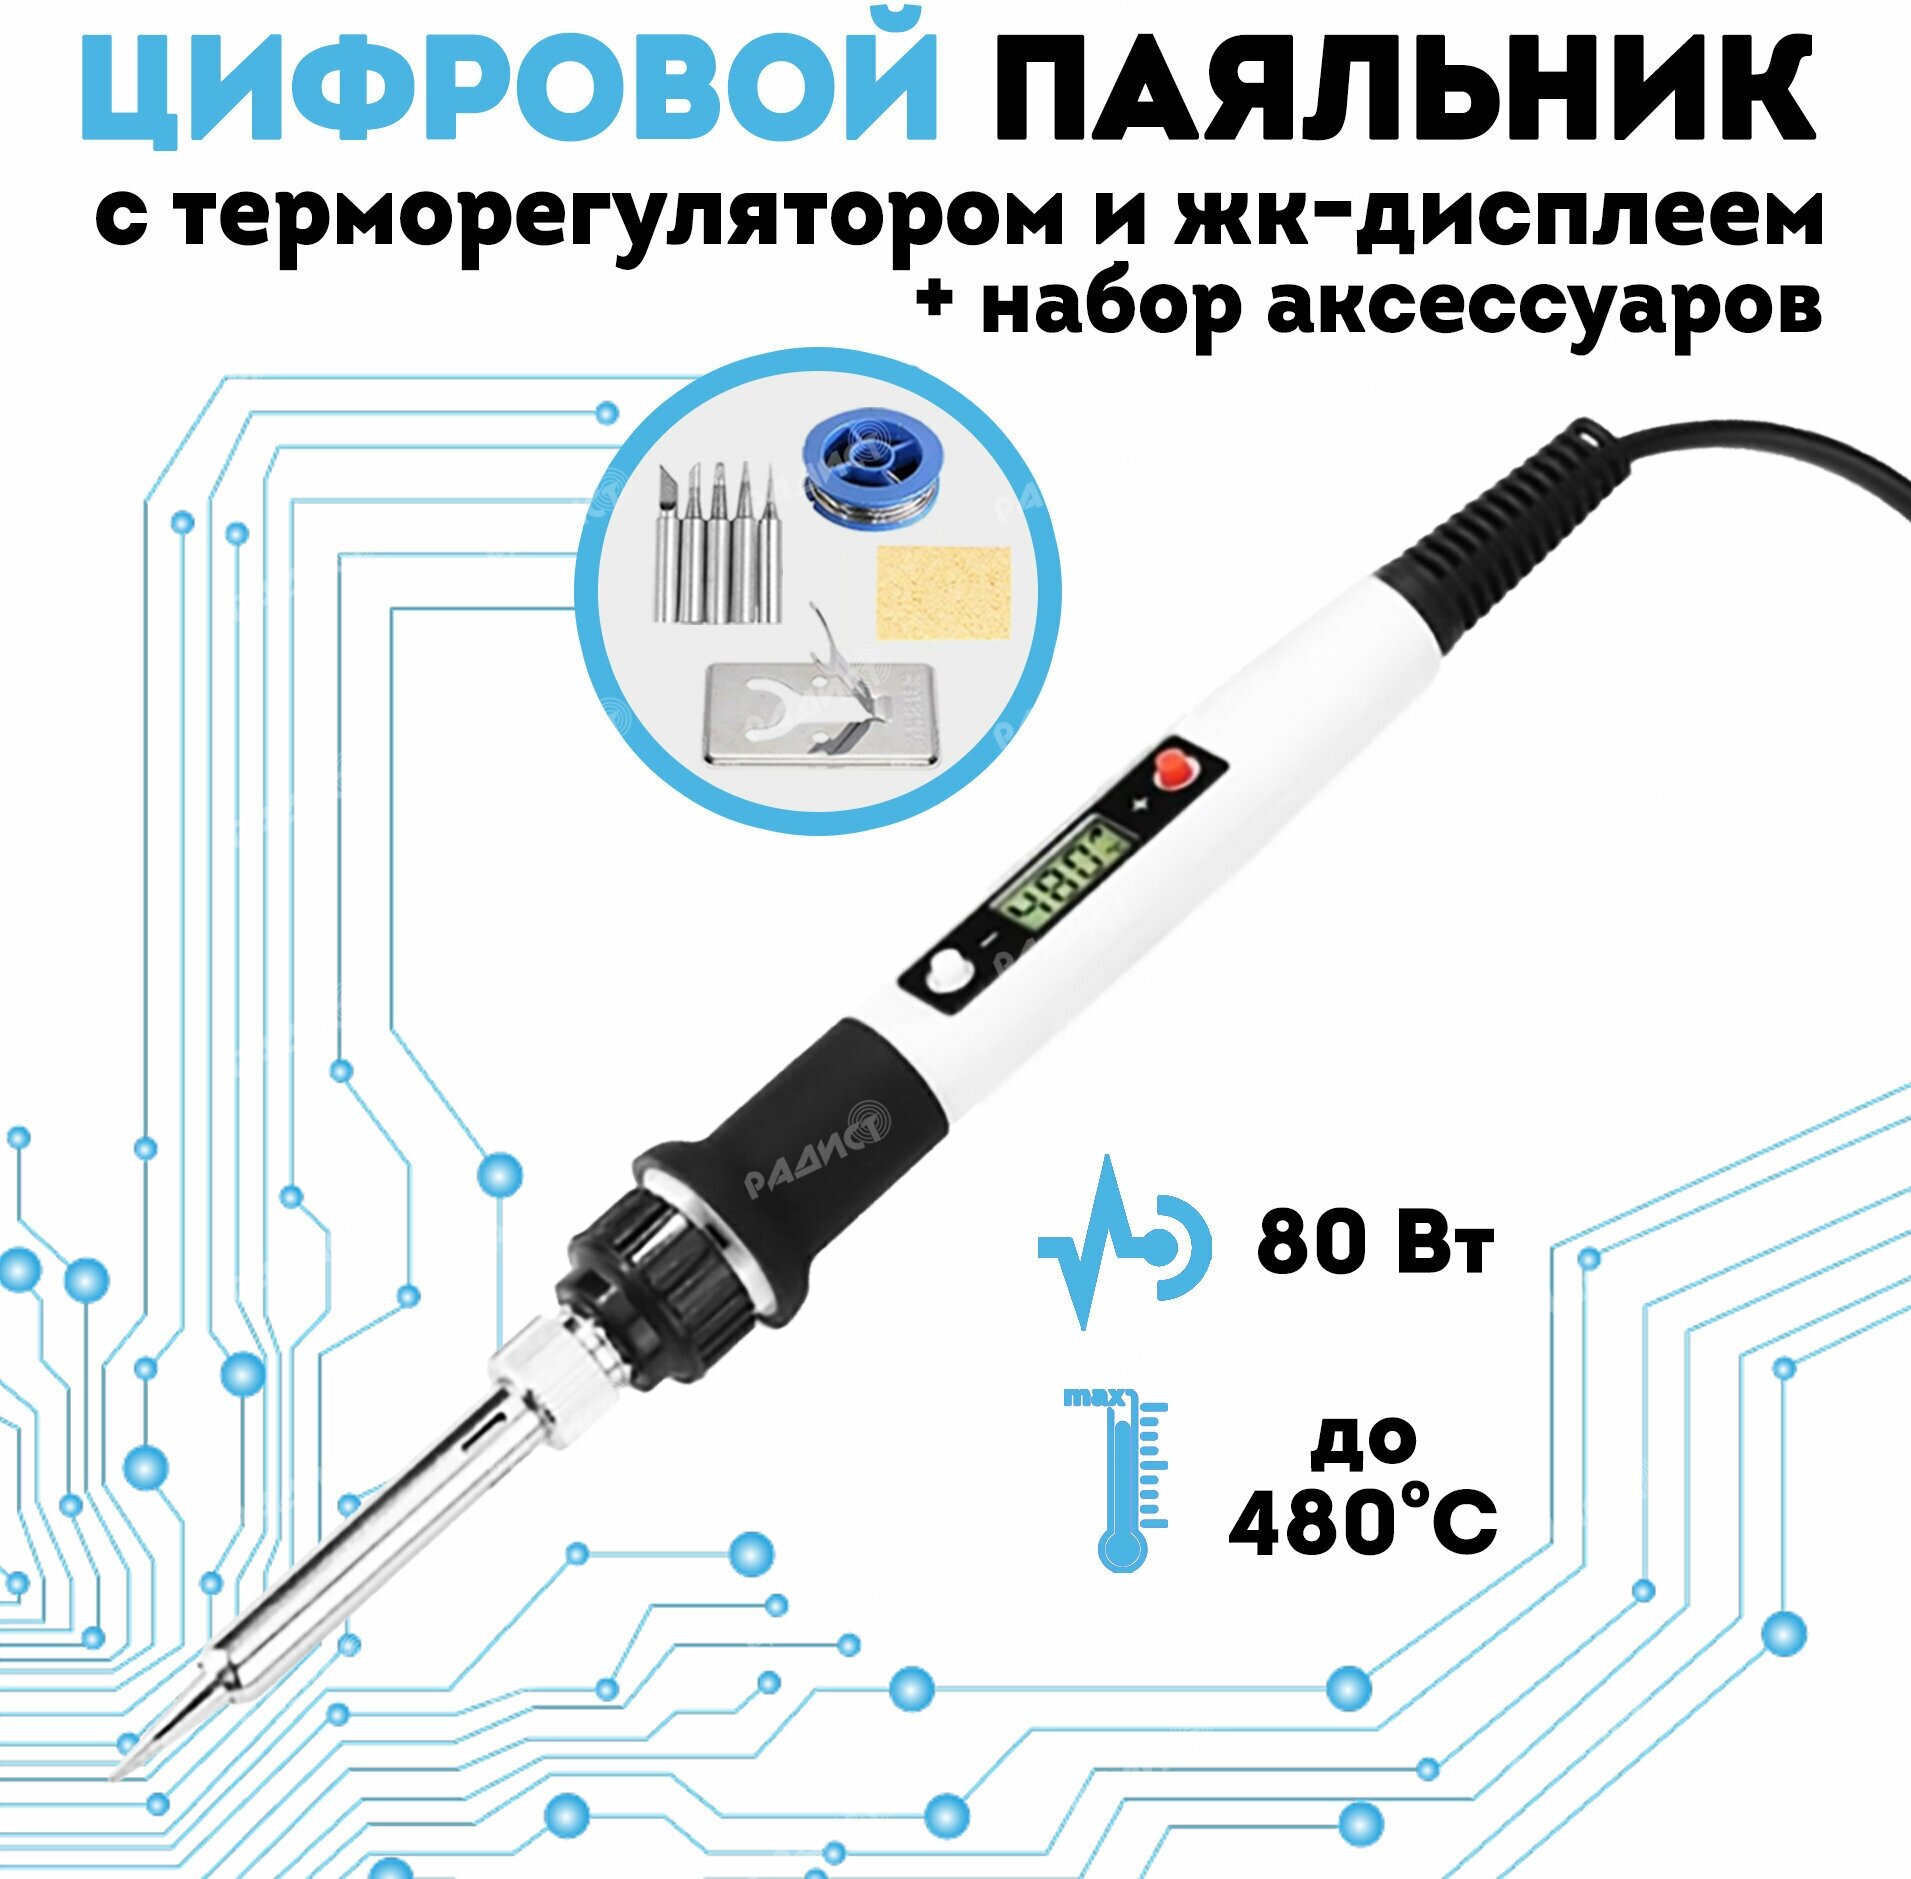 Цифровой паяльник с регулировкой температуры с набором аксессуаров 80Вт белый